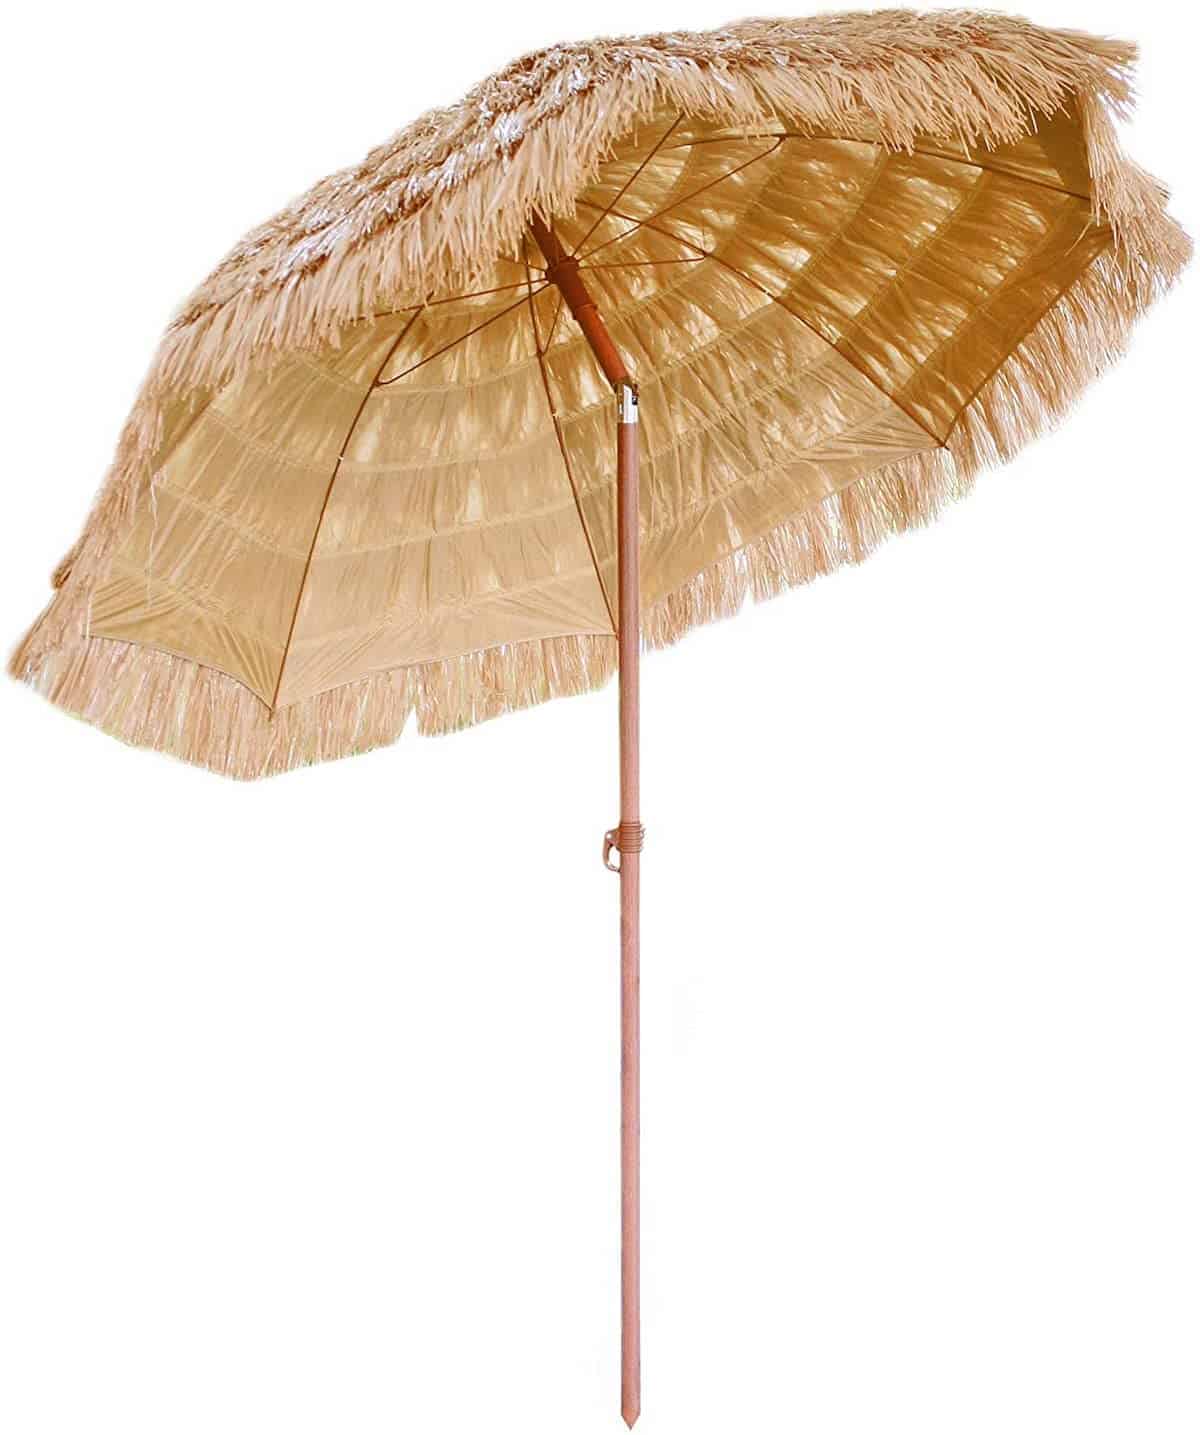 蒂基露台伞